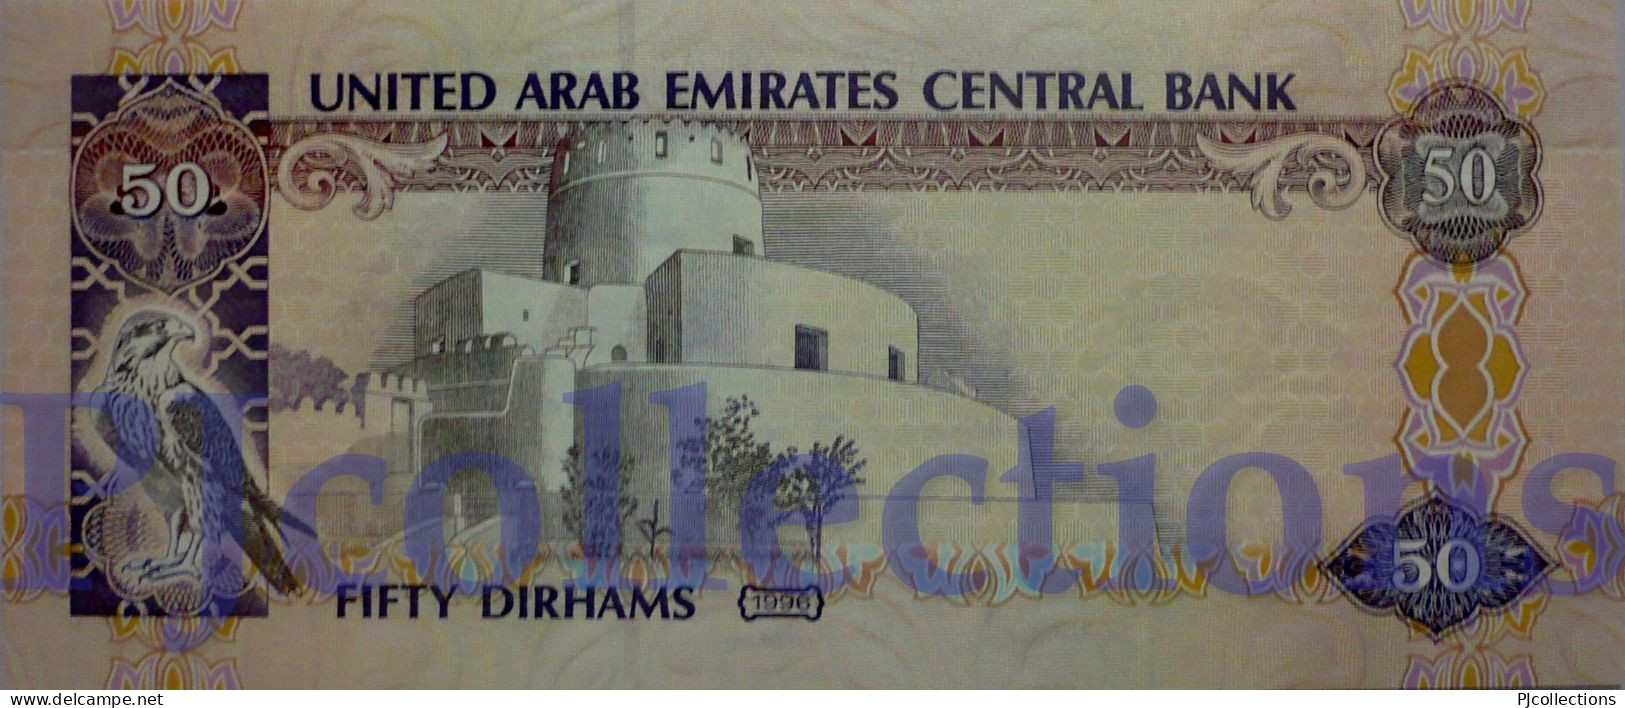 UNITED ARAB EMIRATES 50 DIRHAMS 1996 PICK 14b UNC - Emirats Arabes Unis